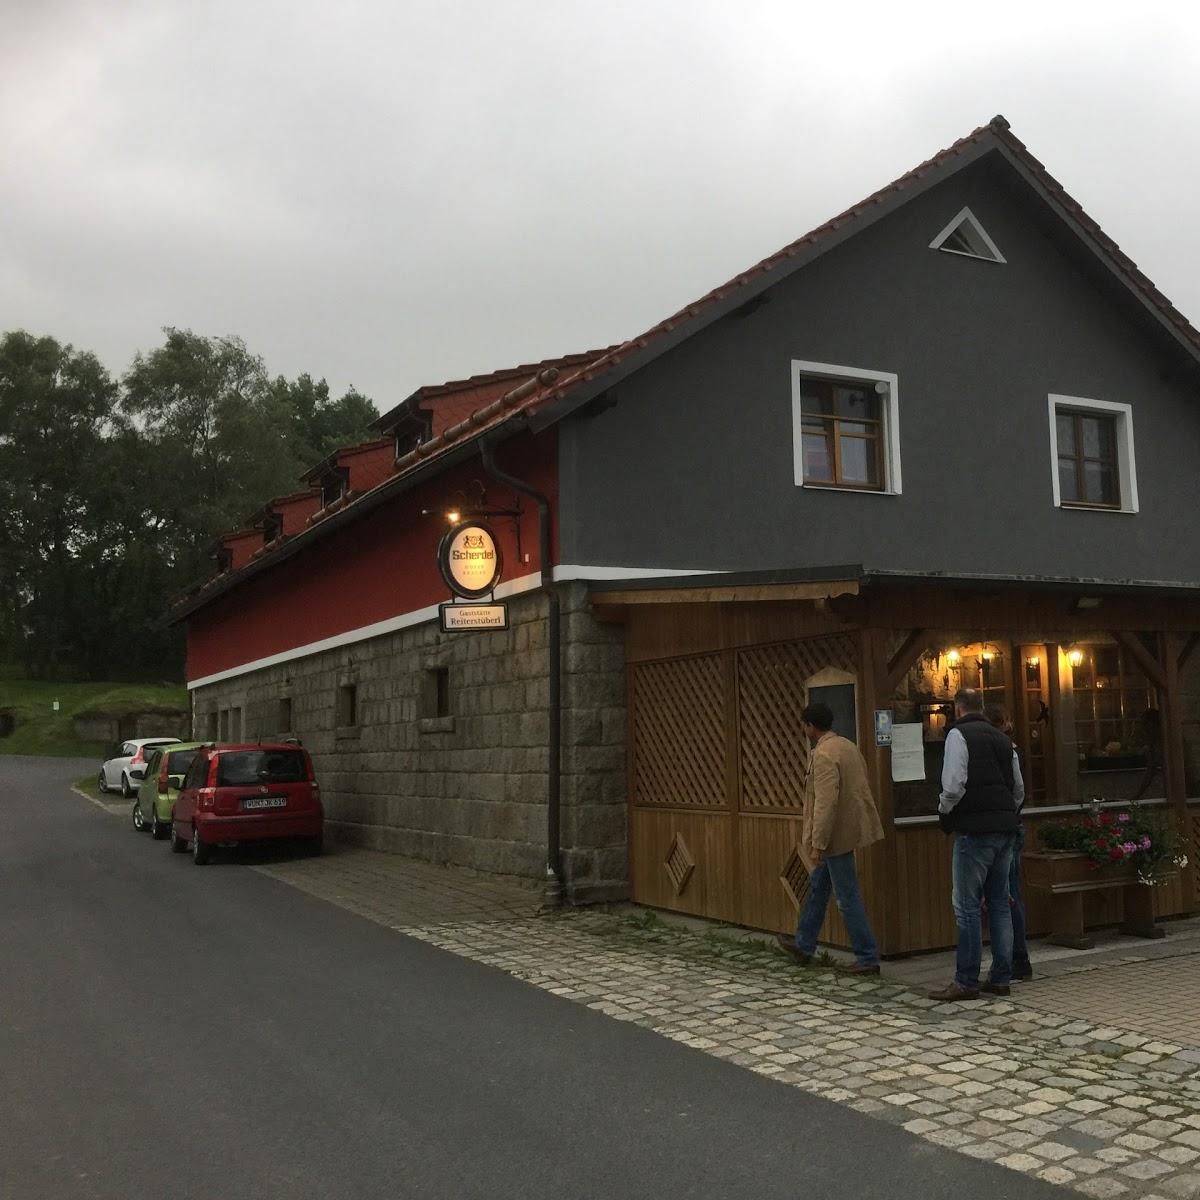 Restaurant "Gaststätte Reiterstüberl" in  Marktleuthen